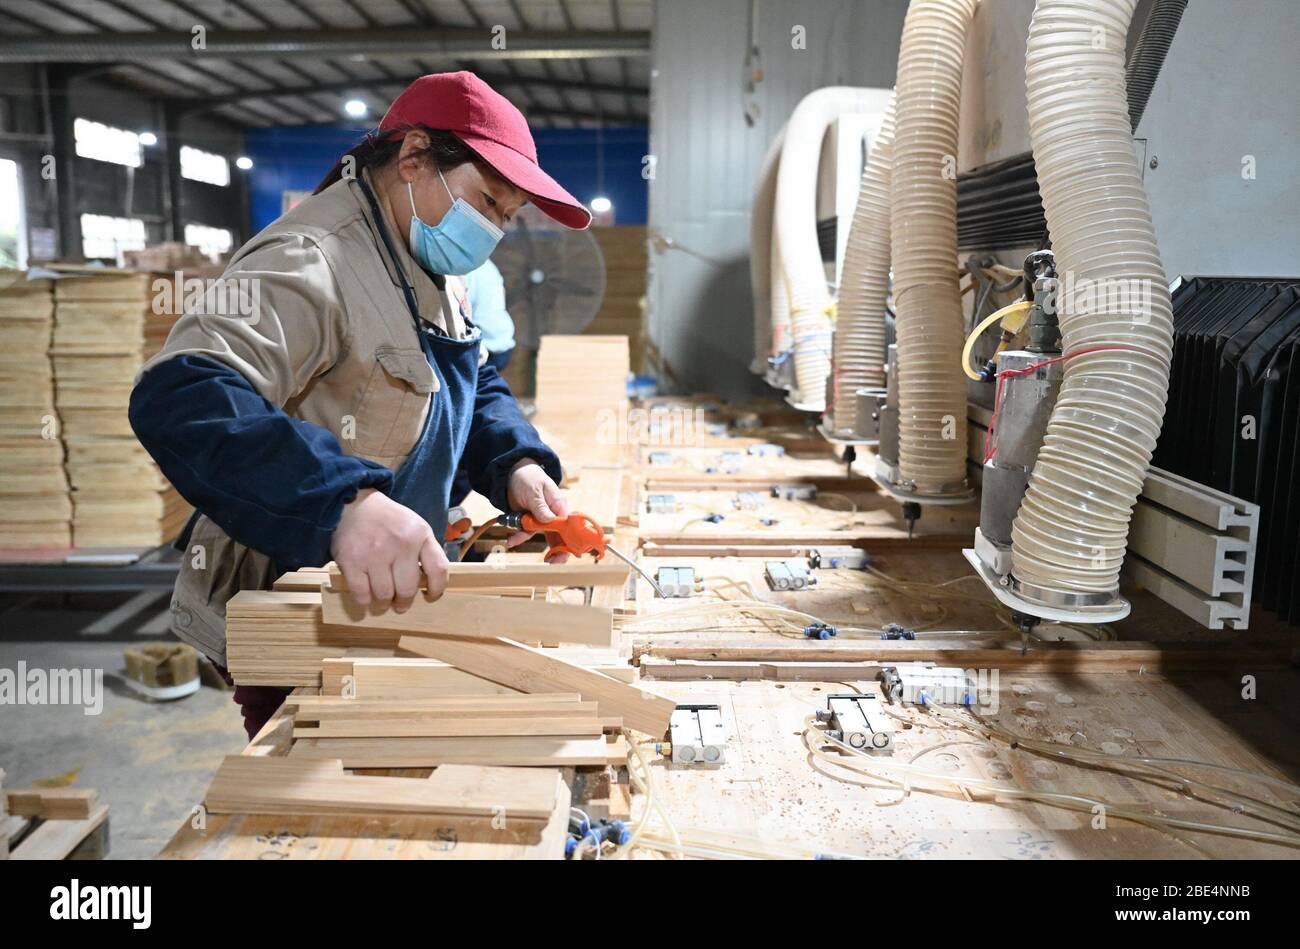 Zhenghe, Cina. 11 Aprile 2020. Un lavoratore produce prodotti di bambù in uno stabilimento nella contea di Zhenghe, nella provincia del Fujian della Cina sudorientale, il 11 aprile 2020. Conosciuta come una 'città artigianale di bambù in Cina', Zhenghe County è stata attivamente promuovere lo sviluppo dell'industria di bambù con la sua foresta di bambù 460,000 mu (circa 30,667 ettari). Oggi, ci sono circa 220 imprese con più di 50,000 persone che lavorano in bambù industrie. Nel 2019, il valore totale della produzione di bambù nella contea ha raggiunto 4.379 miliardi di yuan (circa 0.62 miliardi di US Credit: Xinhua/Alamy Live News Foto Stock